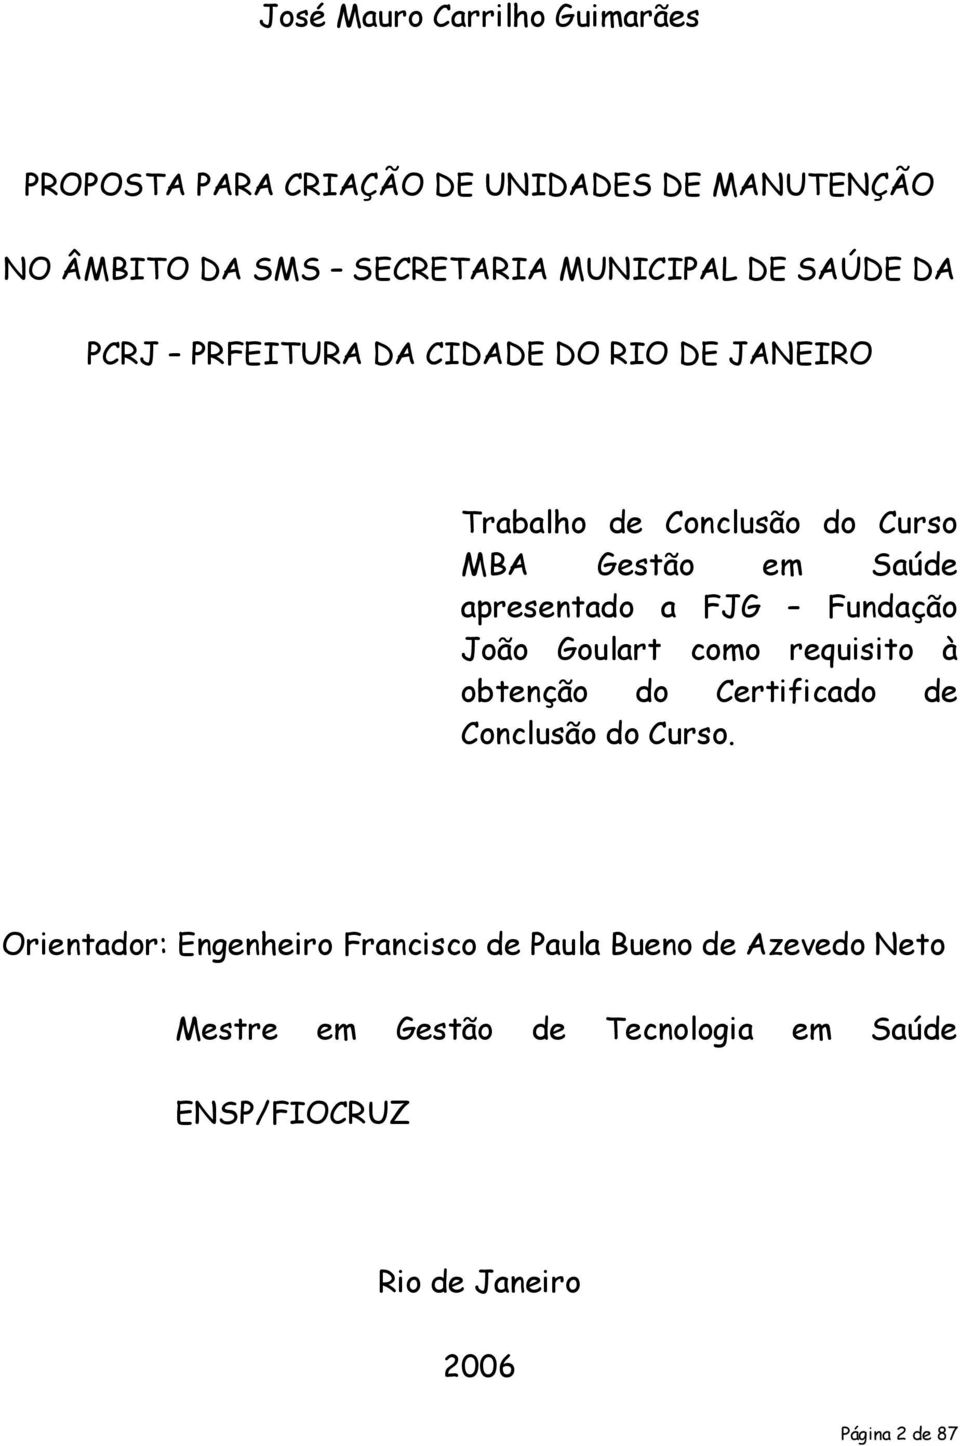 FJG Fundação João Goulart como requisito à obtenção do Certificado de Conclusão do Curso.